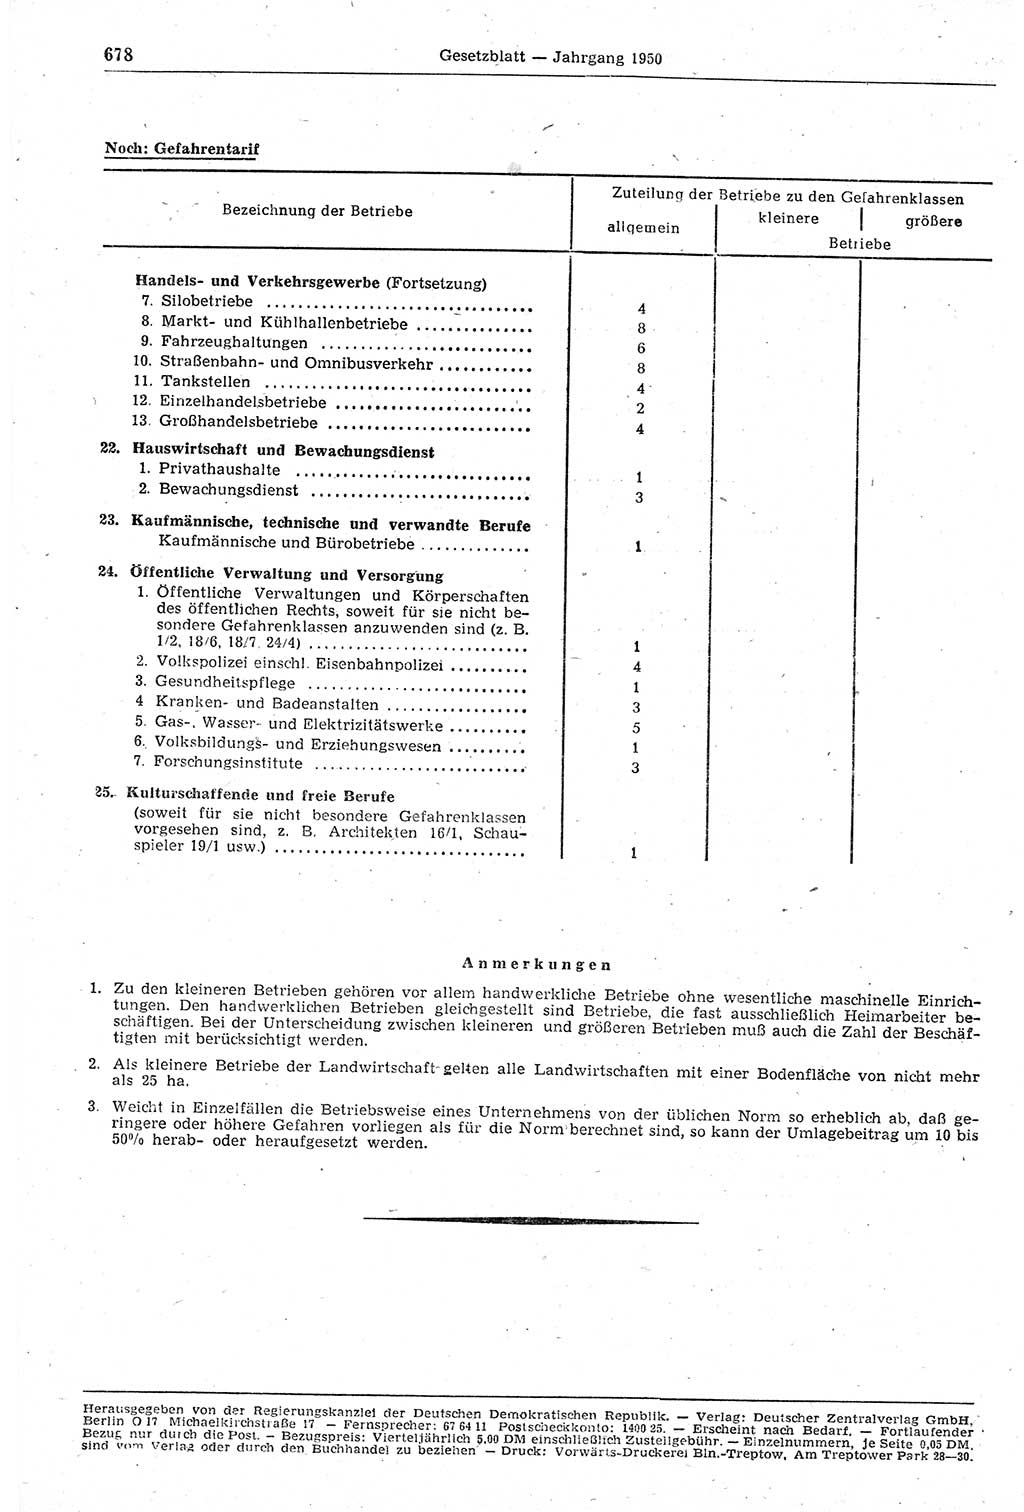 Gesetzblatt (GBl.) der Deutschen Demokratischen Republik (DDR) 1950, Seite 678 (GBl. DDR 1950, S. 678)